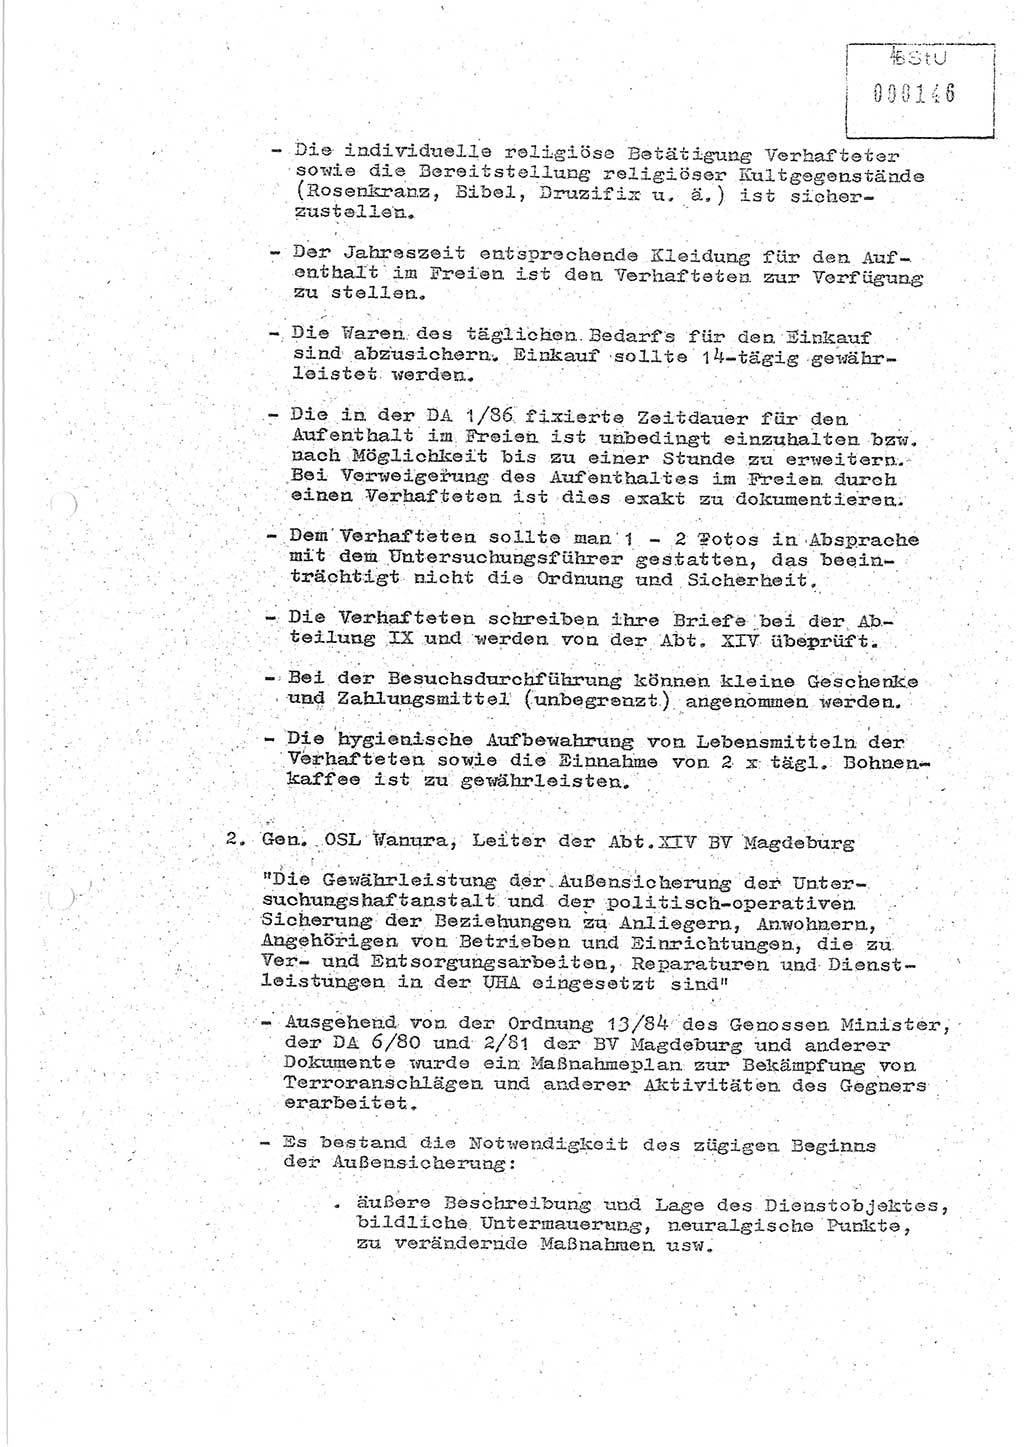 Protokoll zur zentralen Dienstkonferenz der Linie (Abteilung) ⅩⅣ des MfS [Ministerium für Staatssicherheit, Deutsche Demokratische Republik (DDR)] am 5.3./6.3.1986 in der Abteilung (Abt.) XIV des MfS Berlin, Abteilung XIV, Berlin 5.3./6.3.1986, Seite 4 (Prot. Di.-Konf. Abt. ⅩⅣ MfS DDR Bln. 1986, S. 4)